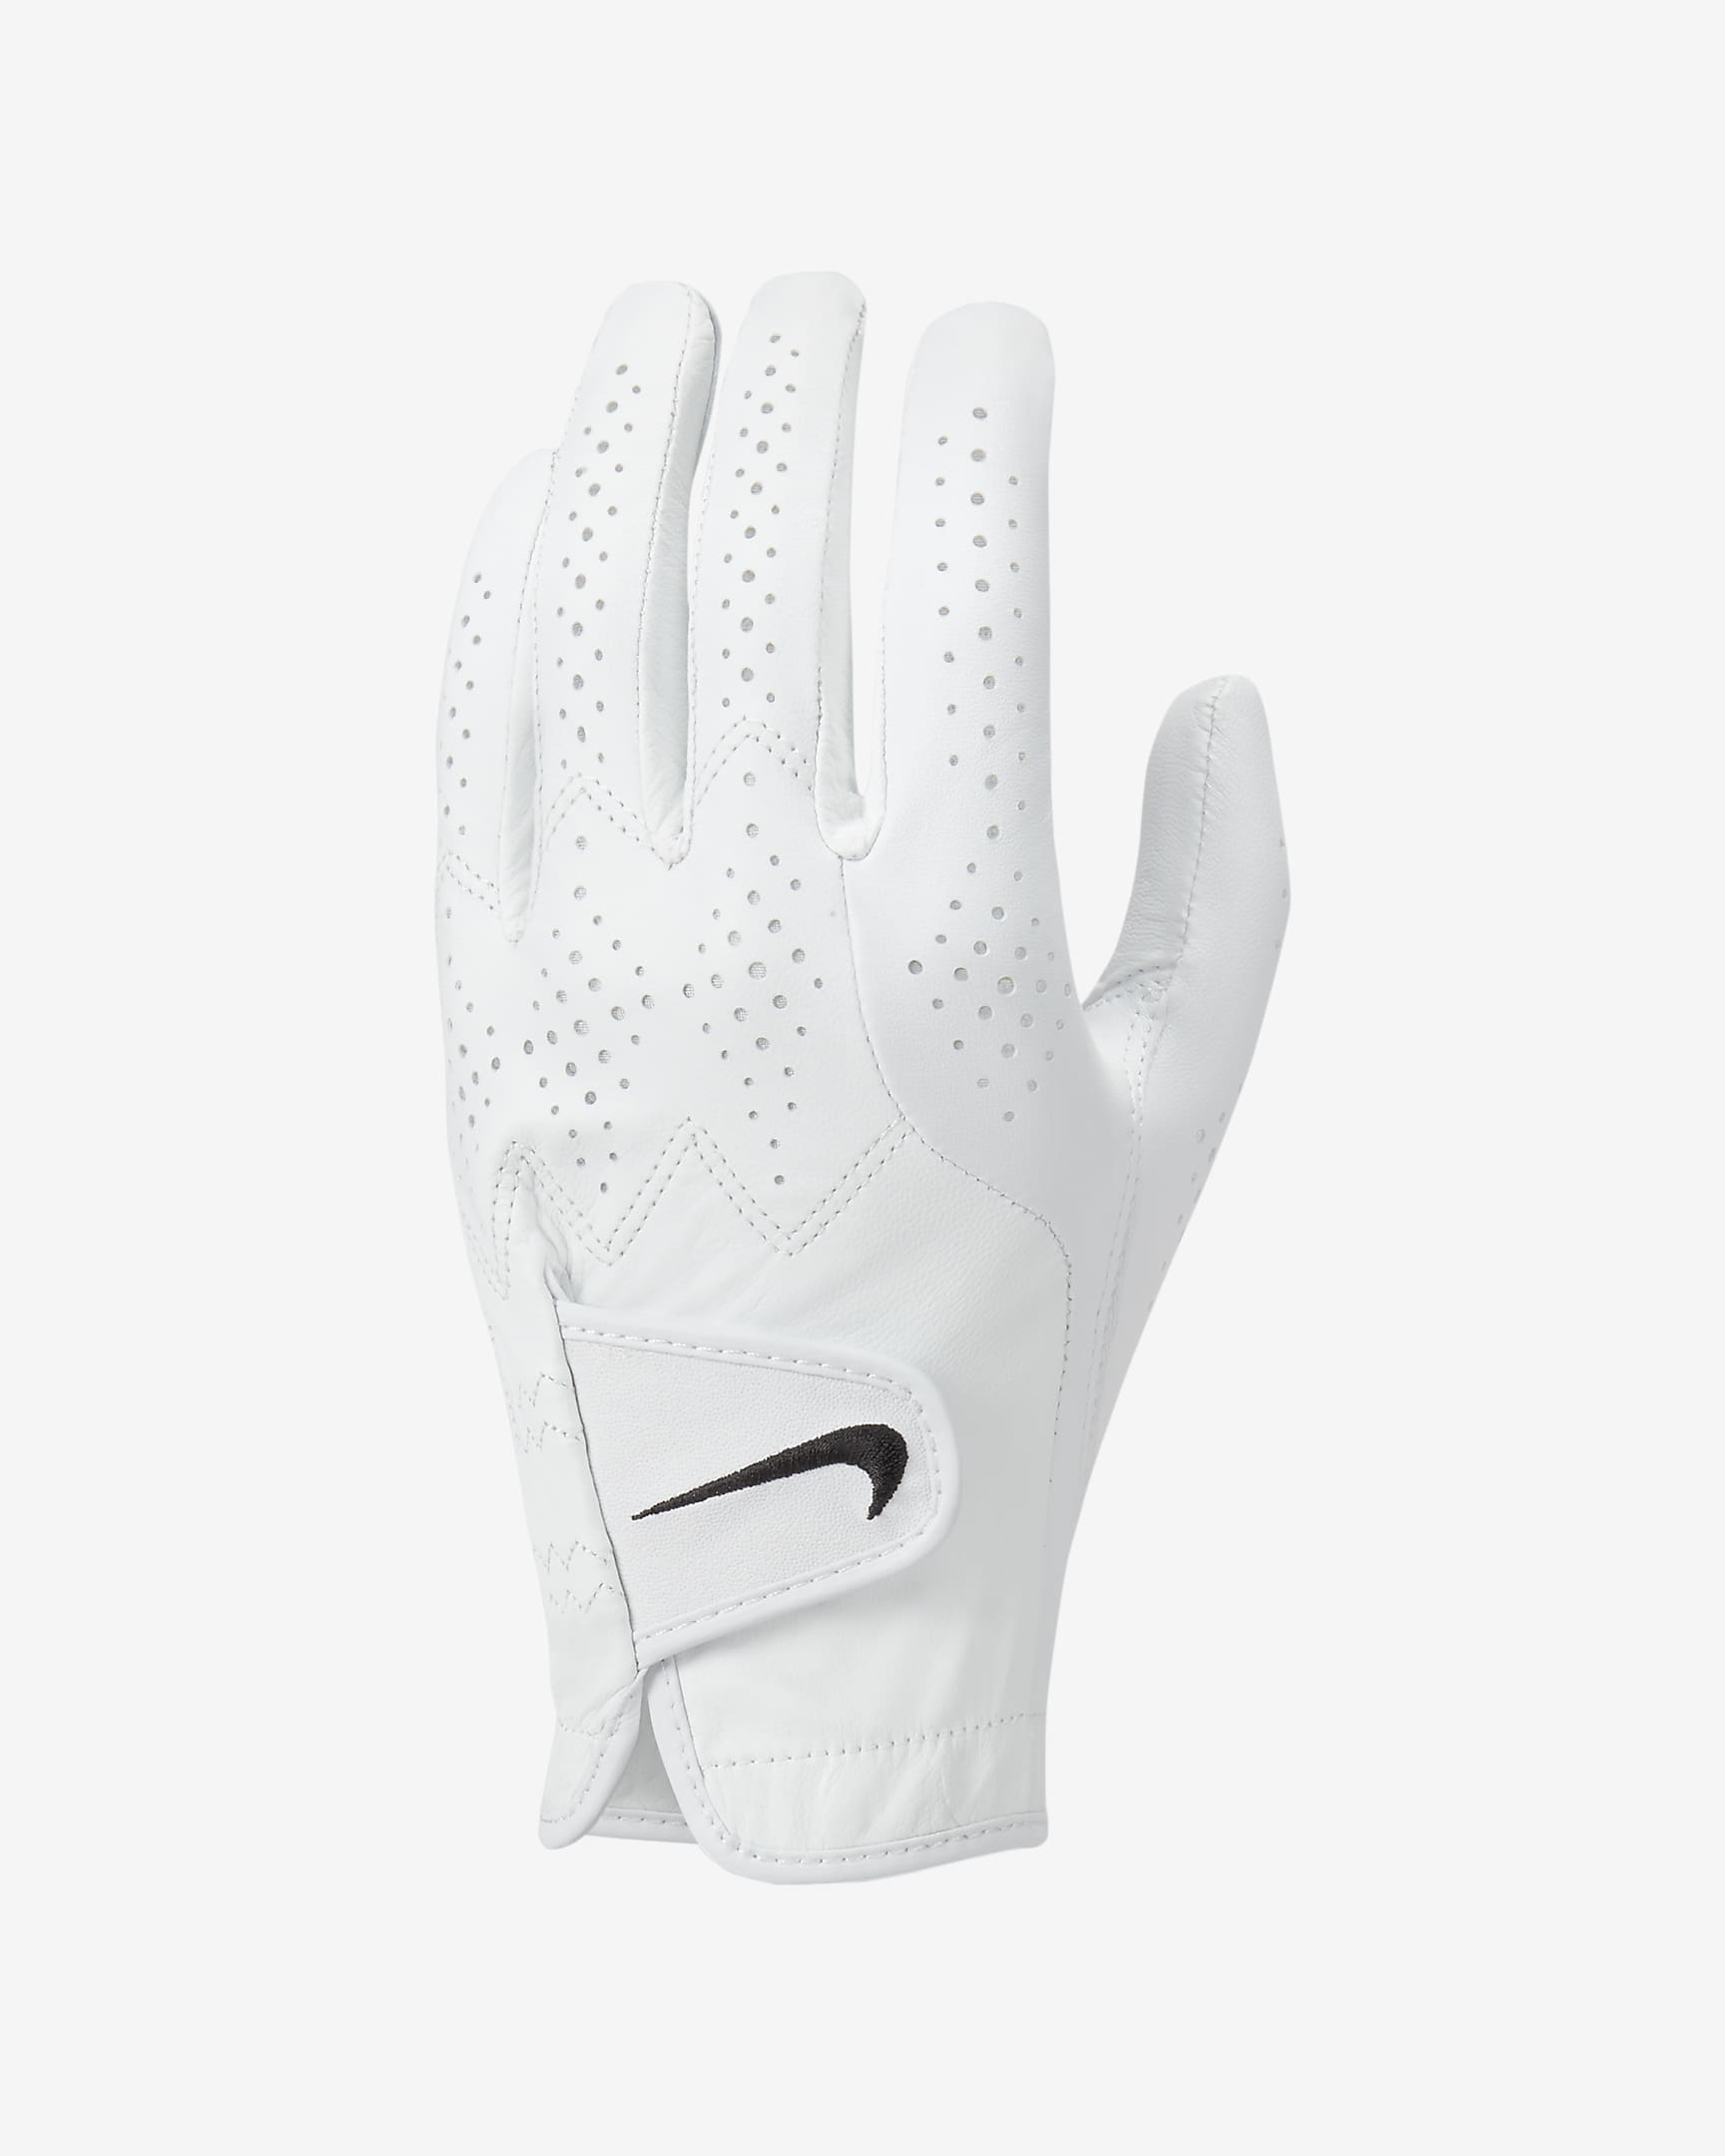 Nike Tour Classic 4 Golf Glove (Left Cadet). Nike.com